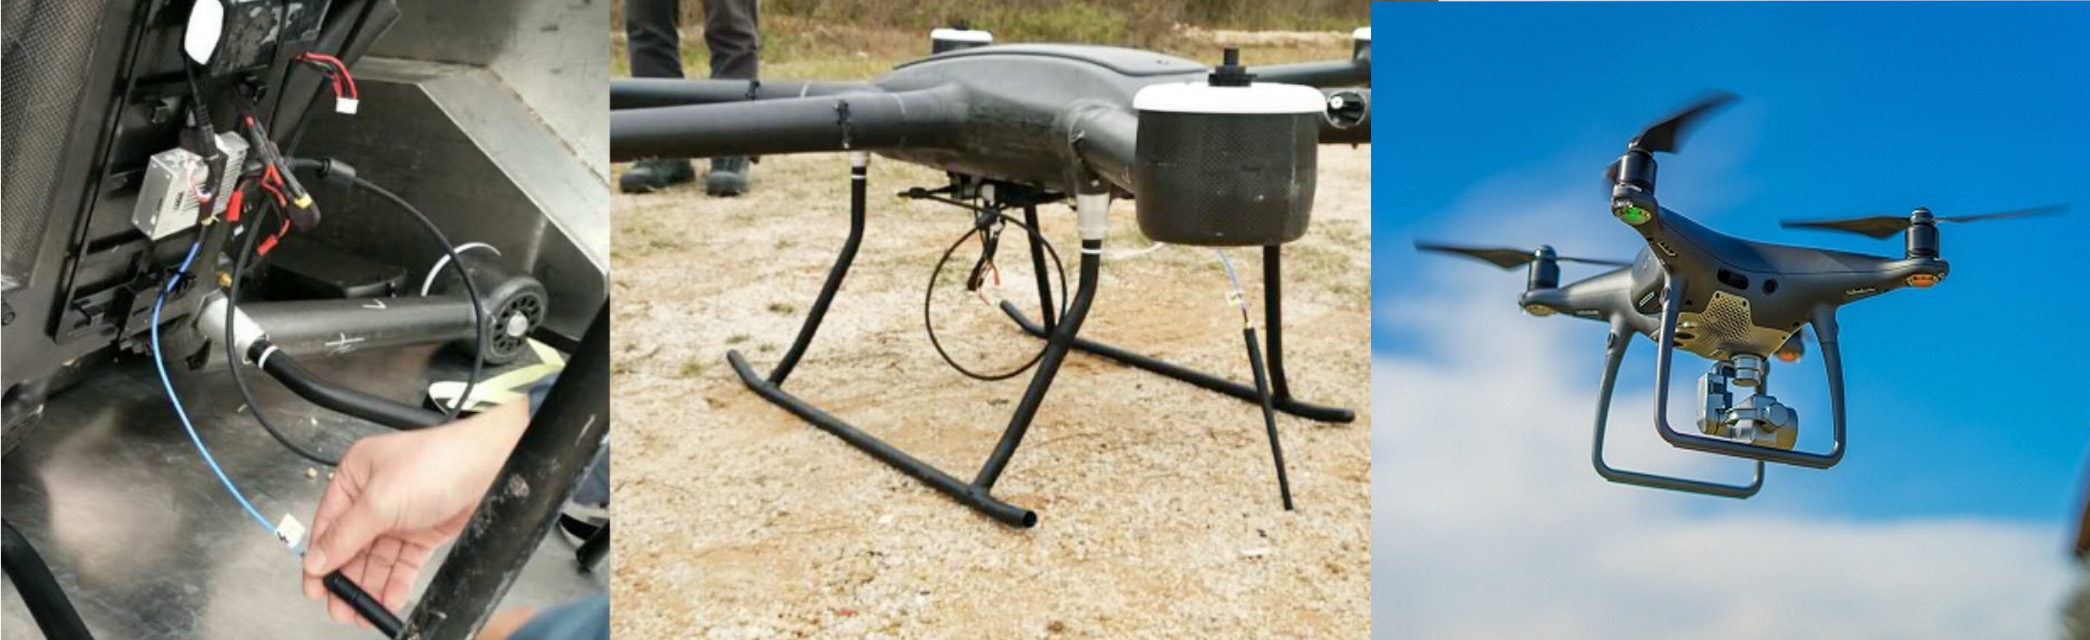 drone-fideo-stjoerder